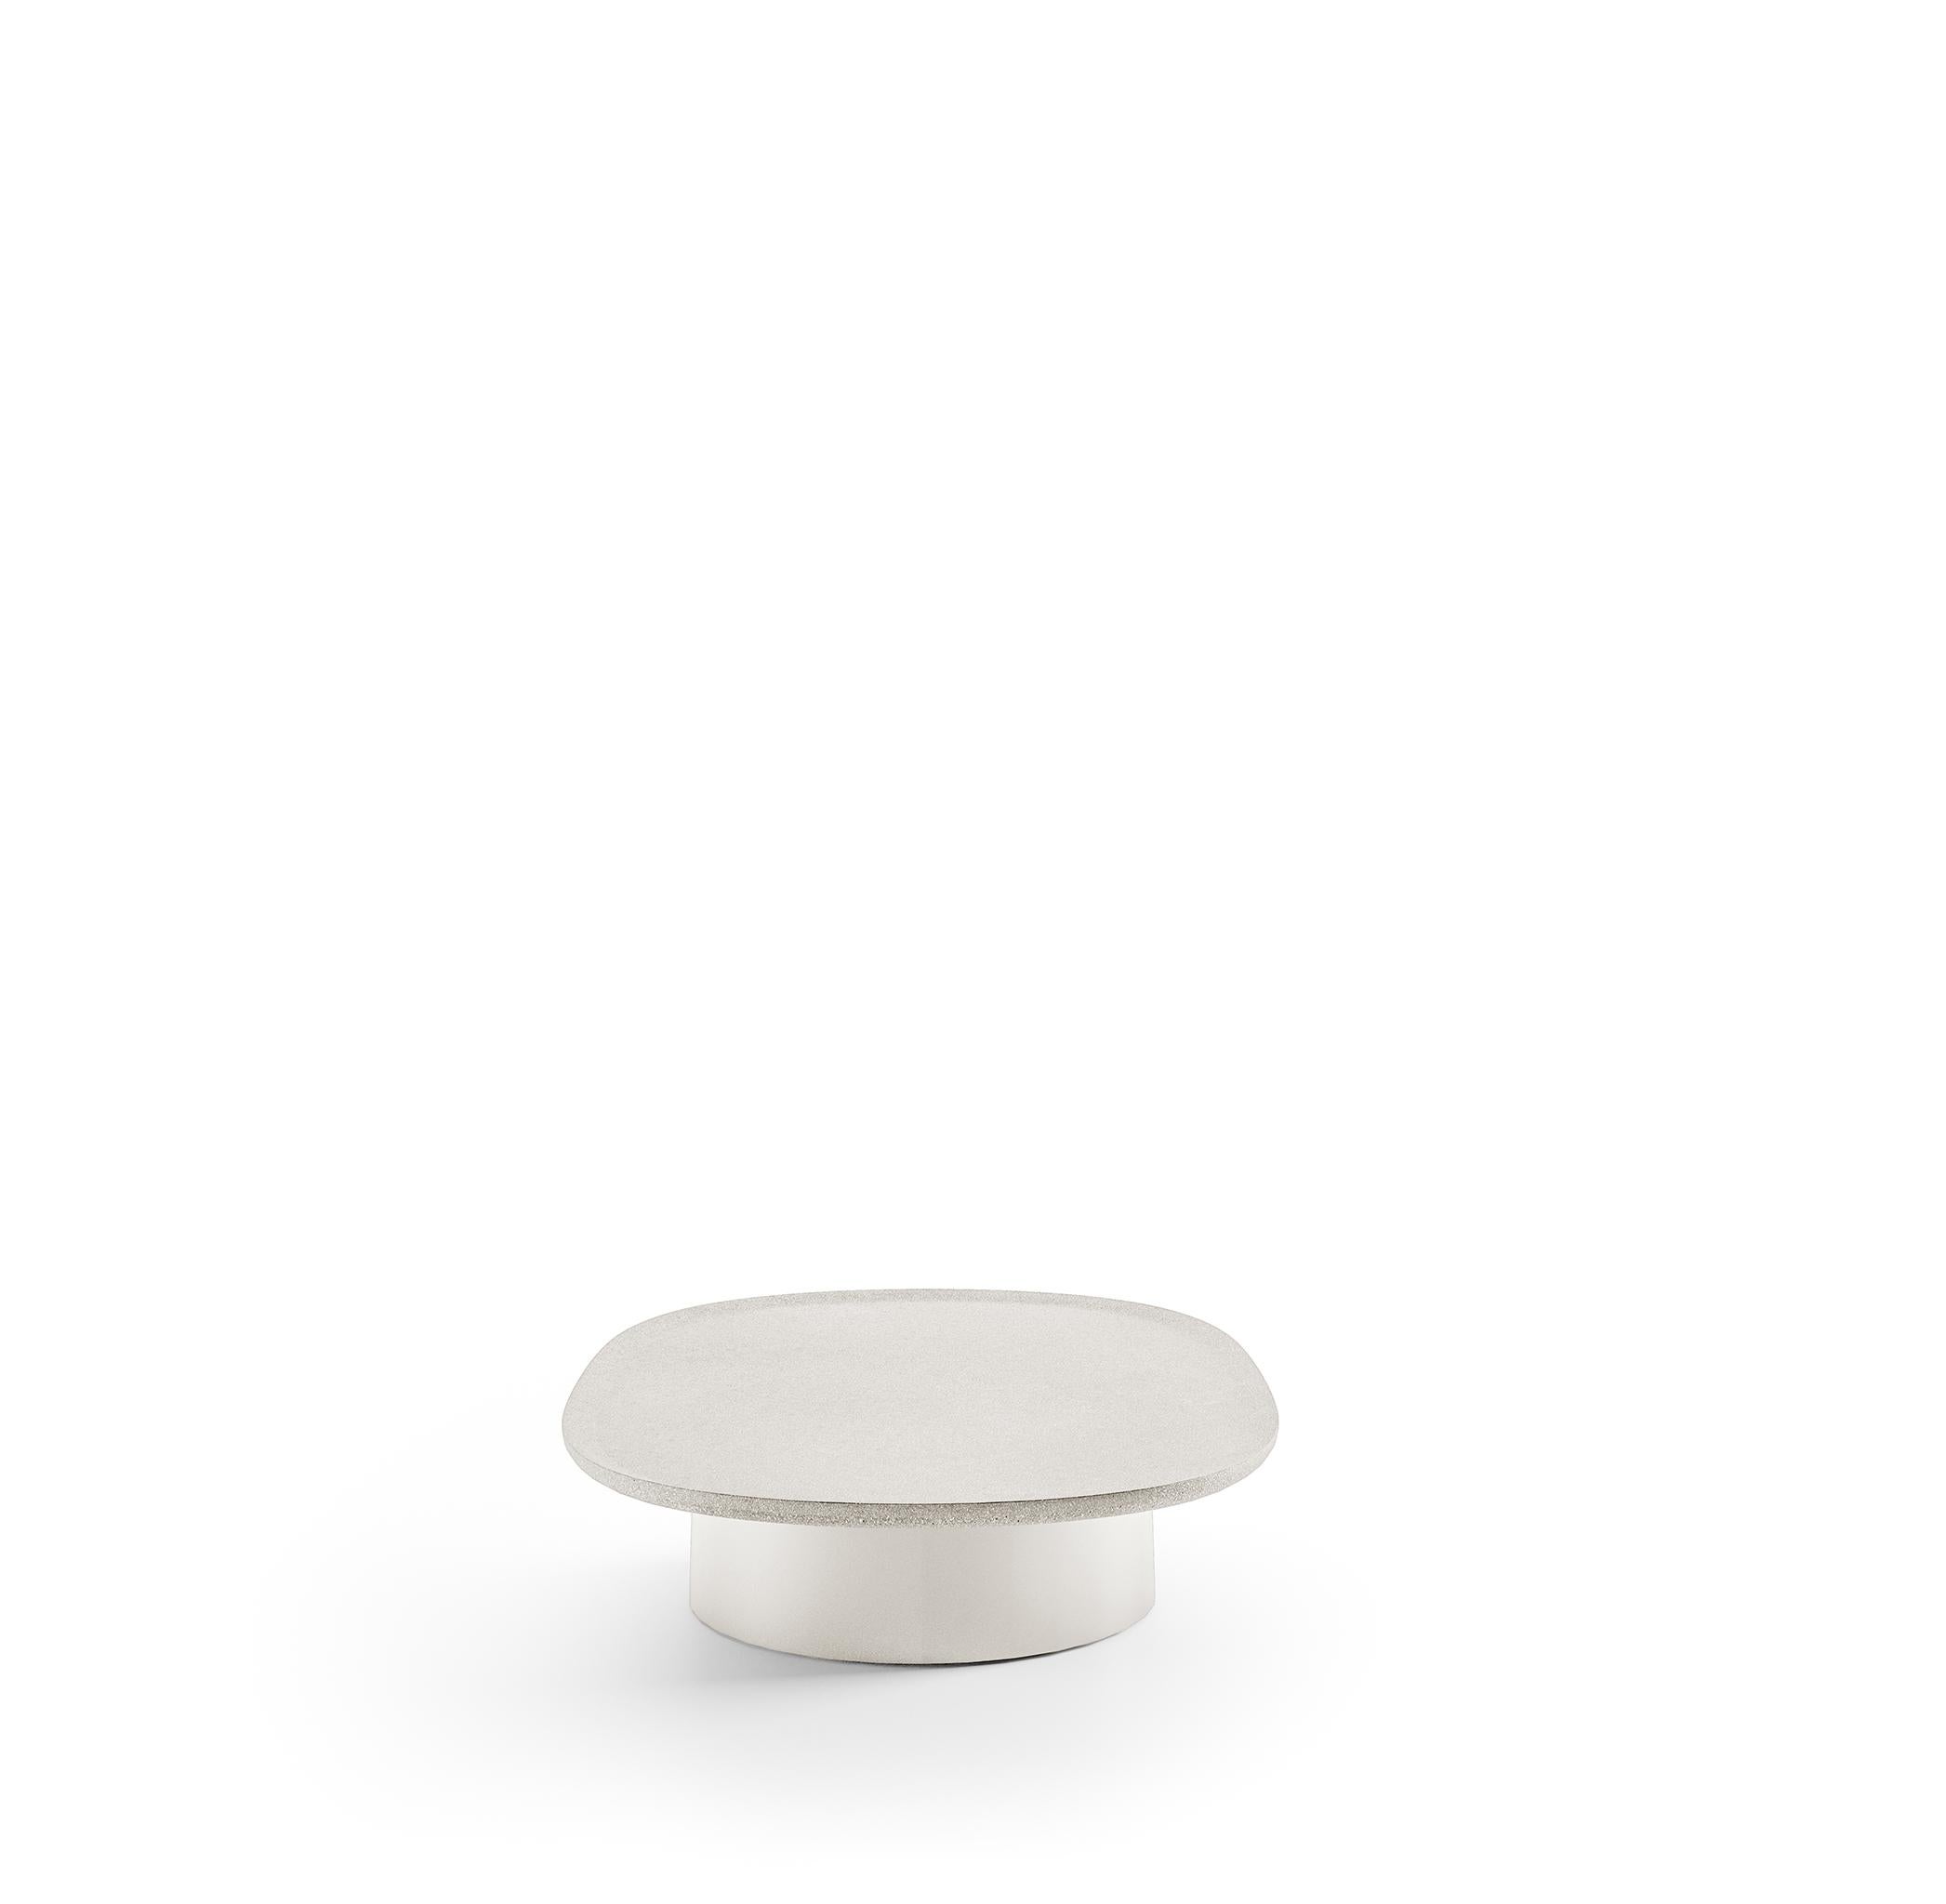 Louisa 3 Ovaler Tisch von Vincent Van Duysen aus weißem Zement. 
Von Experten in Italien exklusiv von Molteni&C. hergestellt. 

Die Louisa-Kollektion von Vincent Van Duysen besteht aus Couchtischen, die sich unwiderstehlich anfühlen. Diese ovale